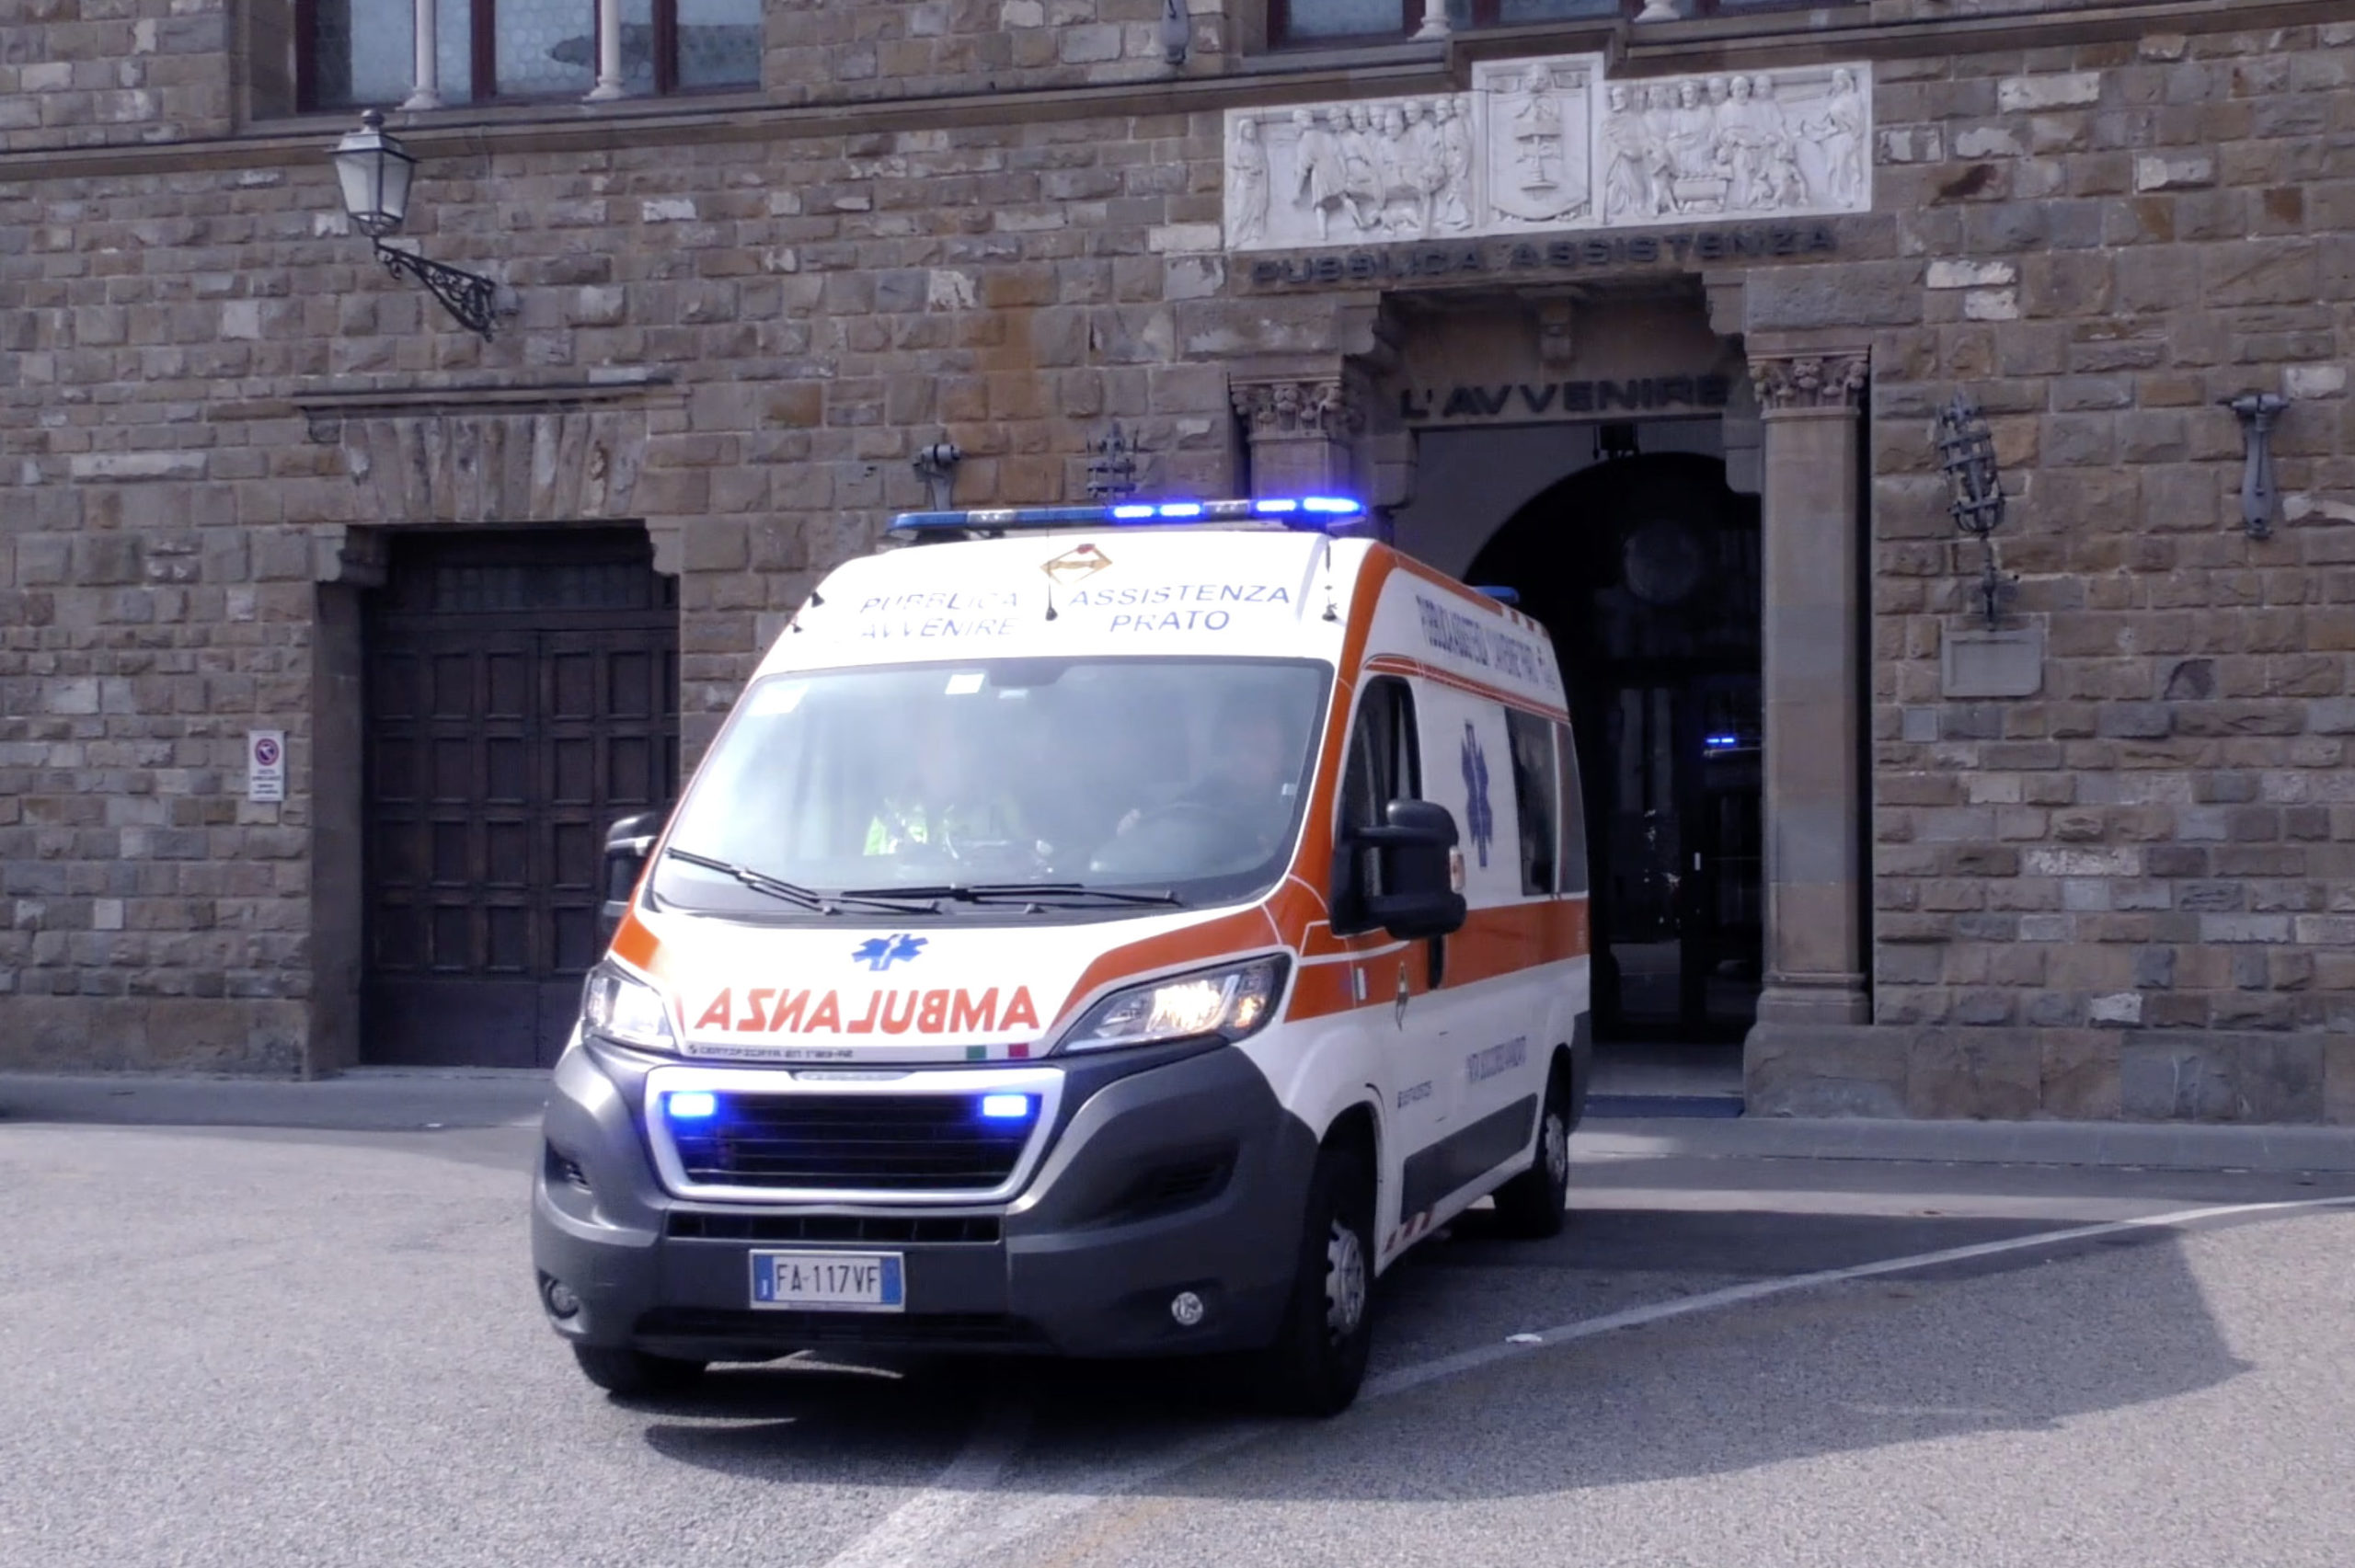 Autisti cercasi per le ambulanze. 4 assunzioni alla Pubblica Assistenza